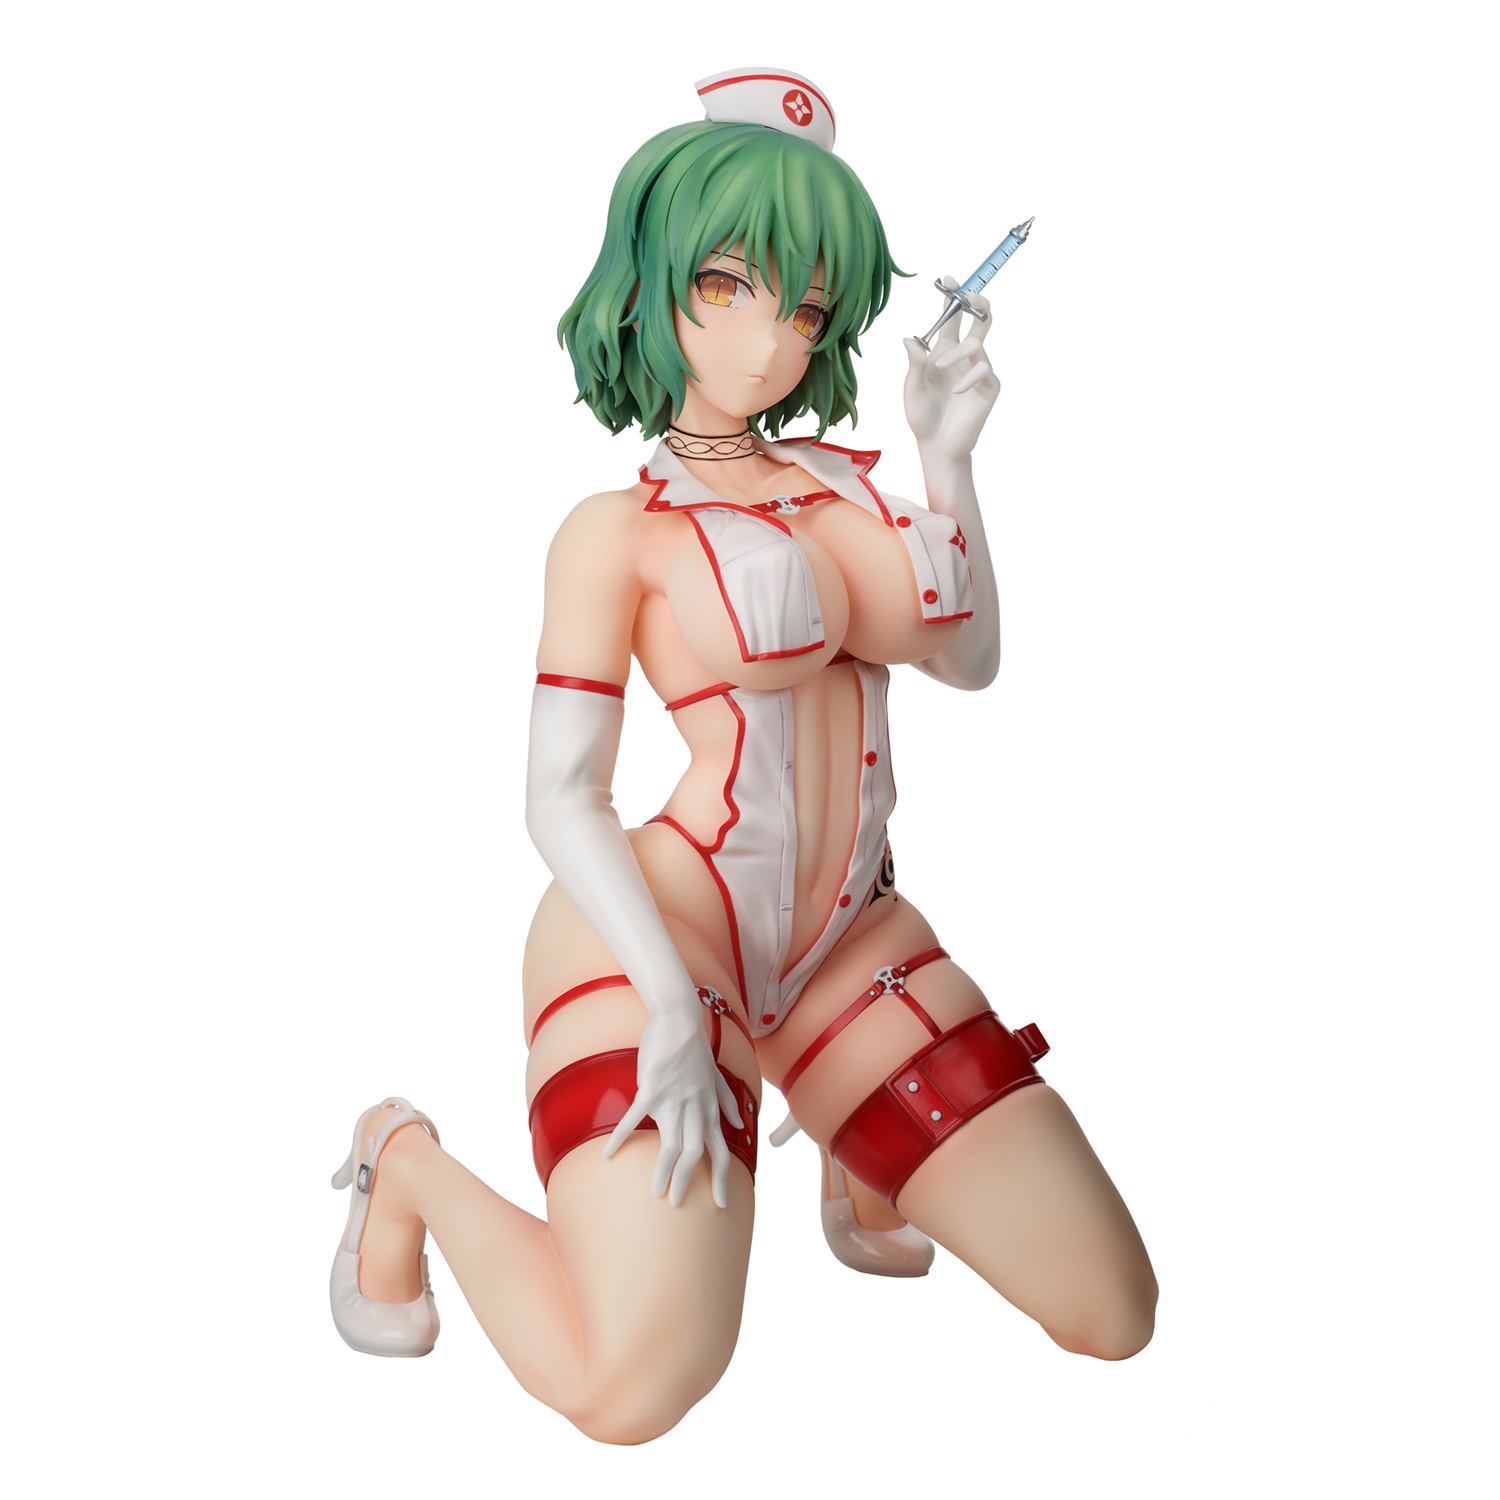 Shinobi Master Senran Kagura New Link 1/4 Scale Pre-Painted Figure: Hikage Sexy Nurse Ver. Hobby Stock